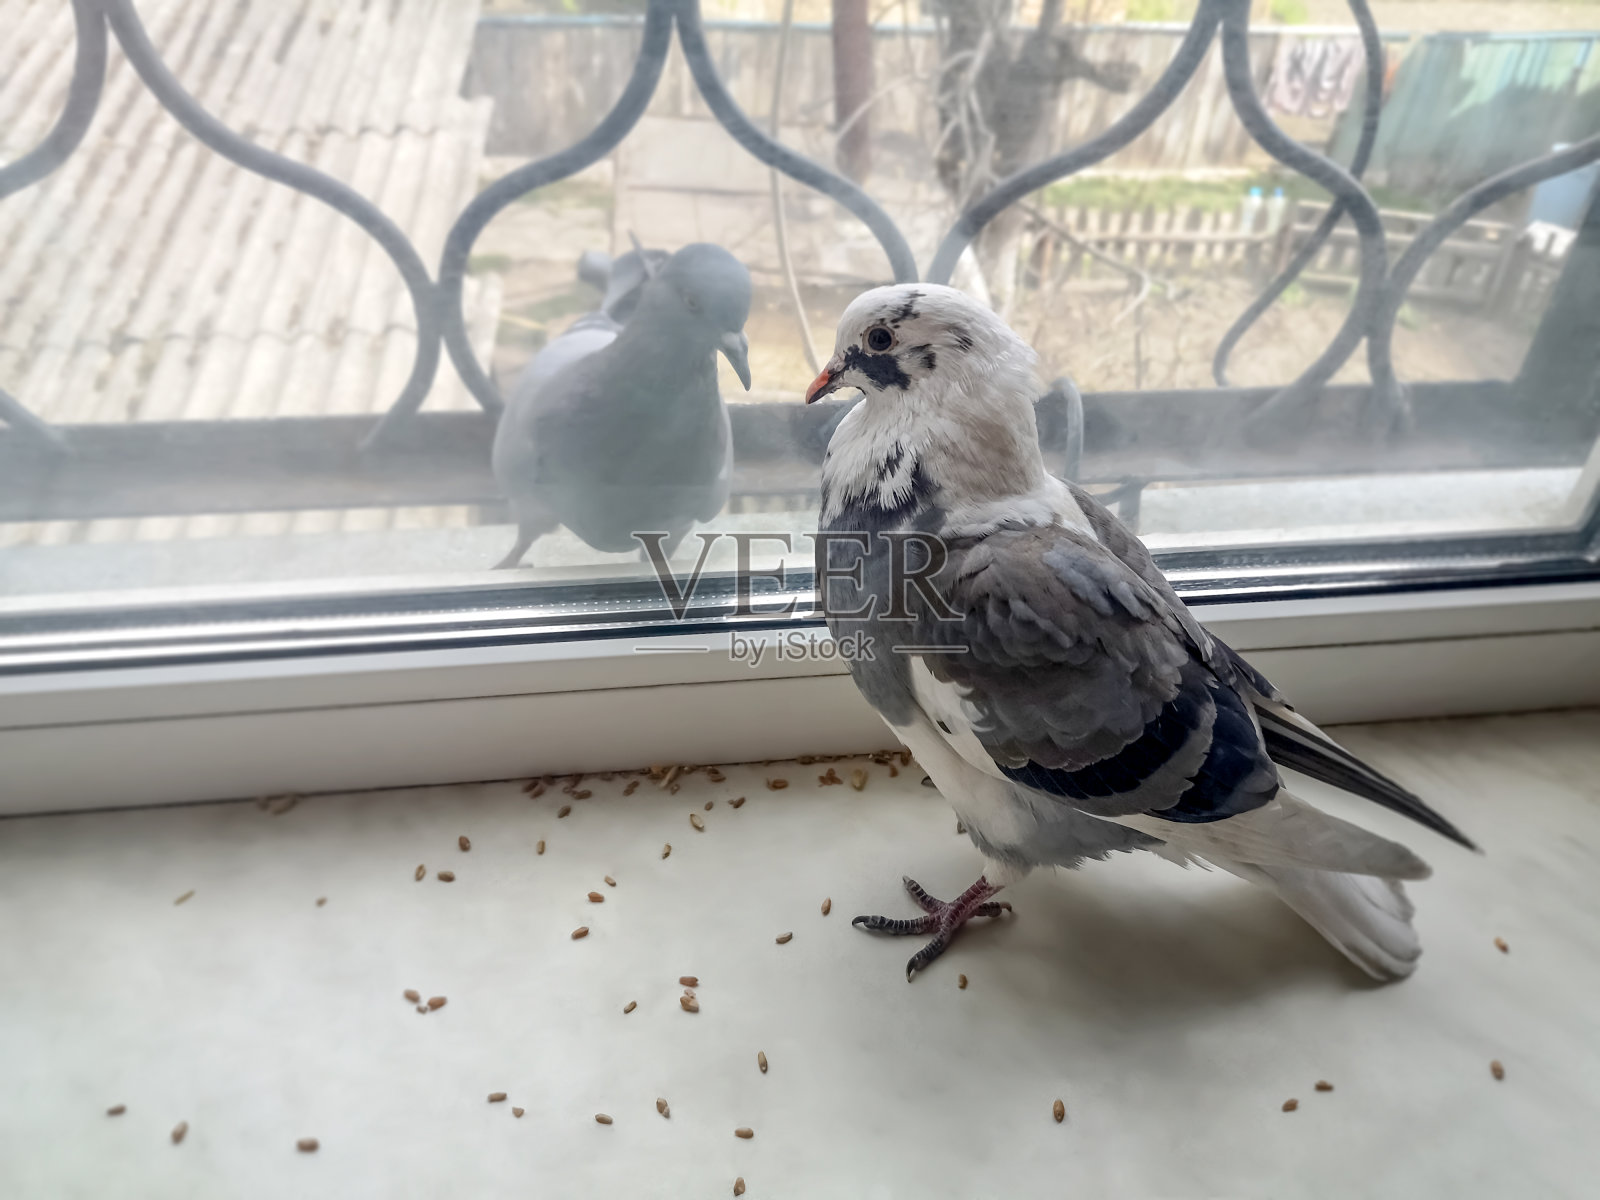 两只鸽子分别在窗玻璃的两侧。一只美丽的灰白色斑点鸽子站在窗台上的谷粒中间，另一只饥饿的灰白色鸽子羡慕地看着它照片摄影图片